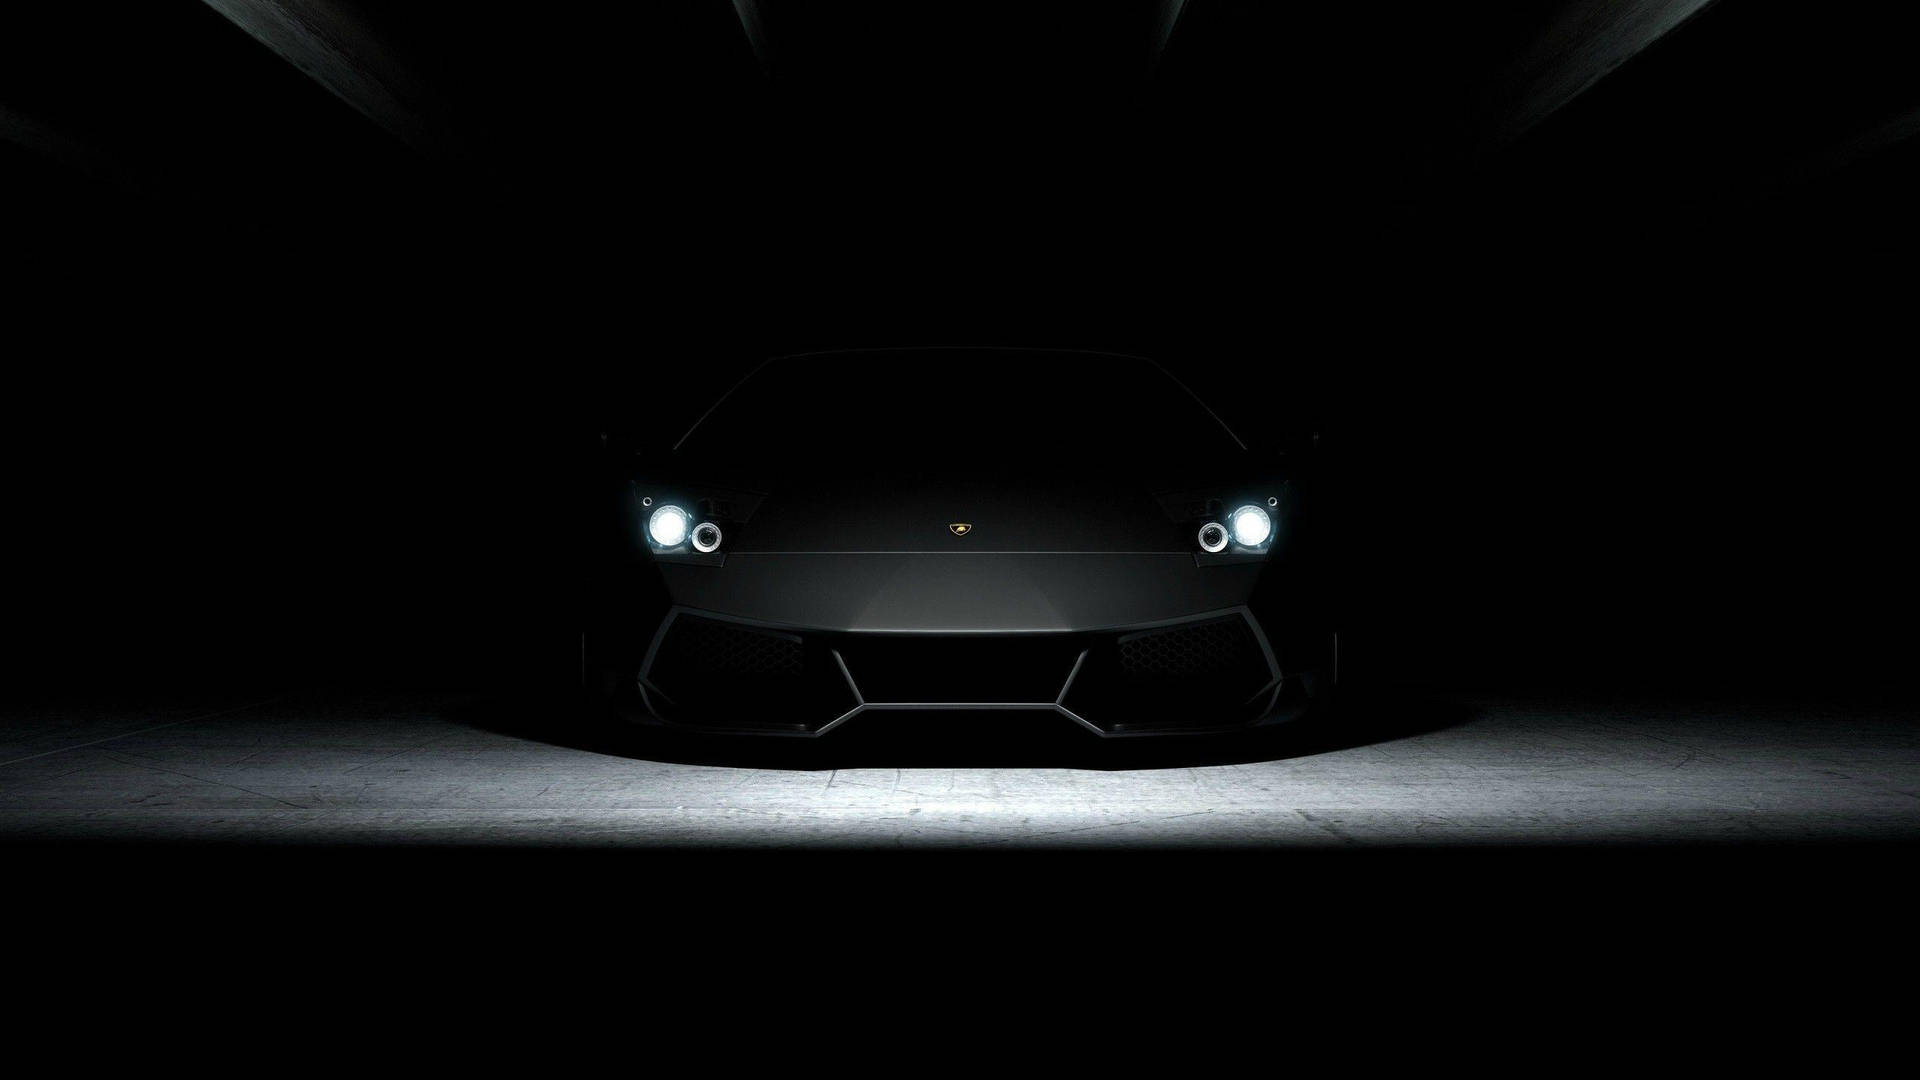 4k Black Car In Darkness